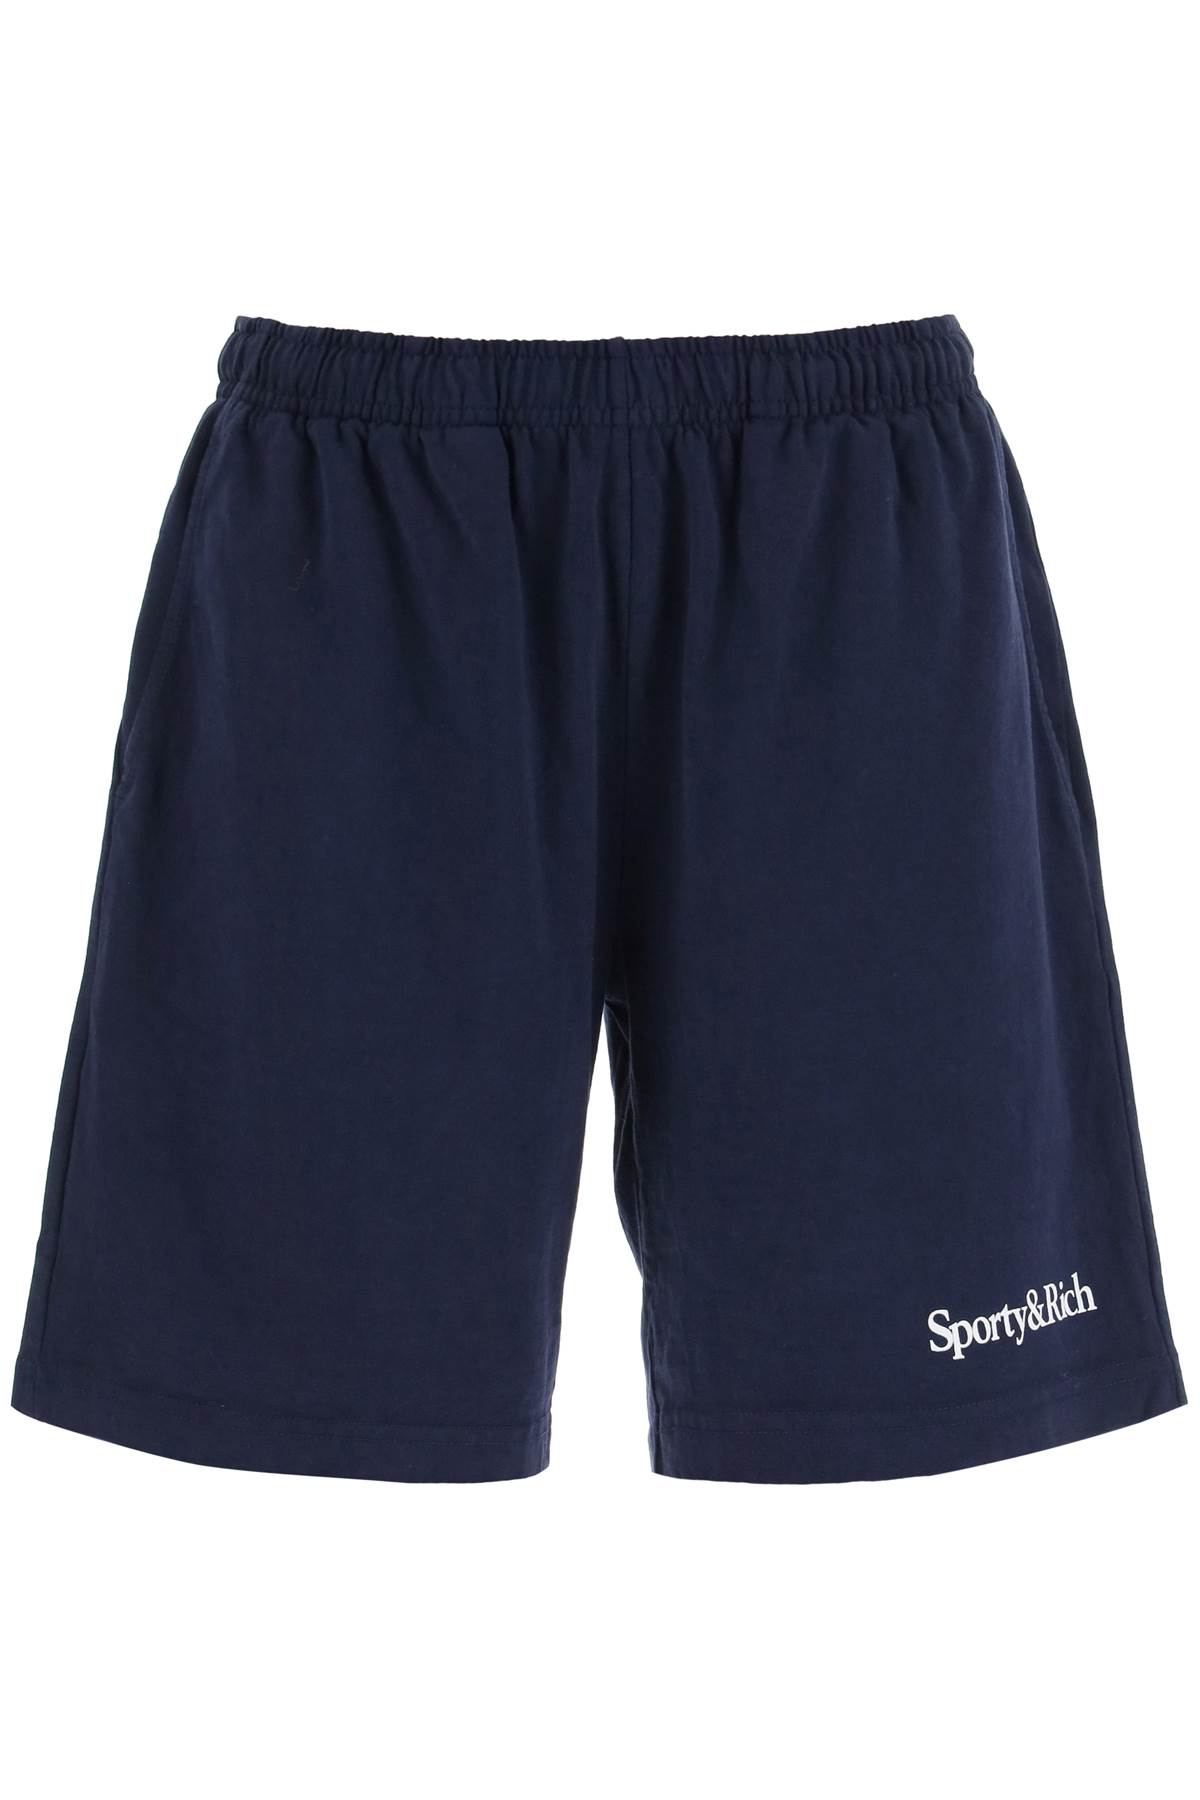 Sporty & Rich Serif Gym Shorts